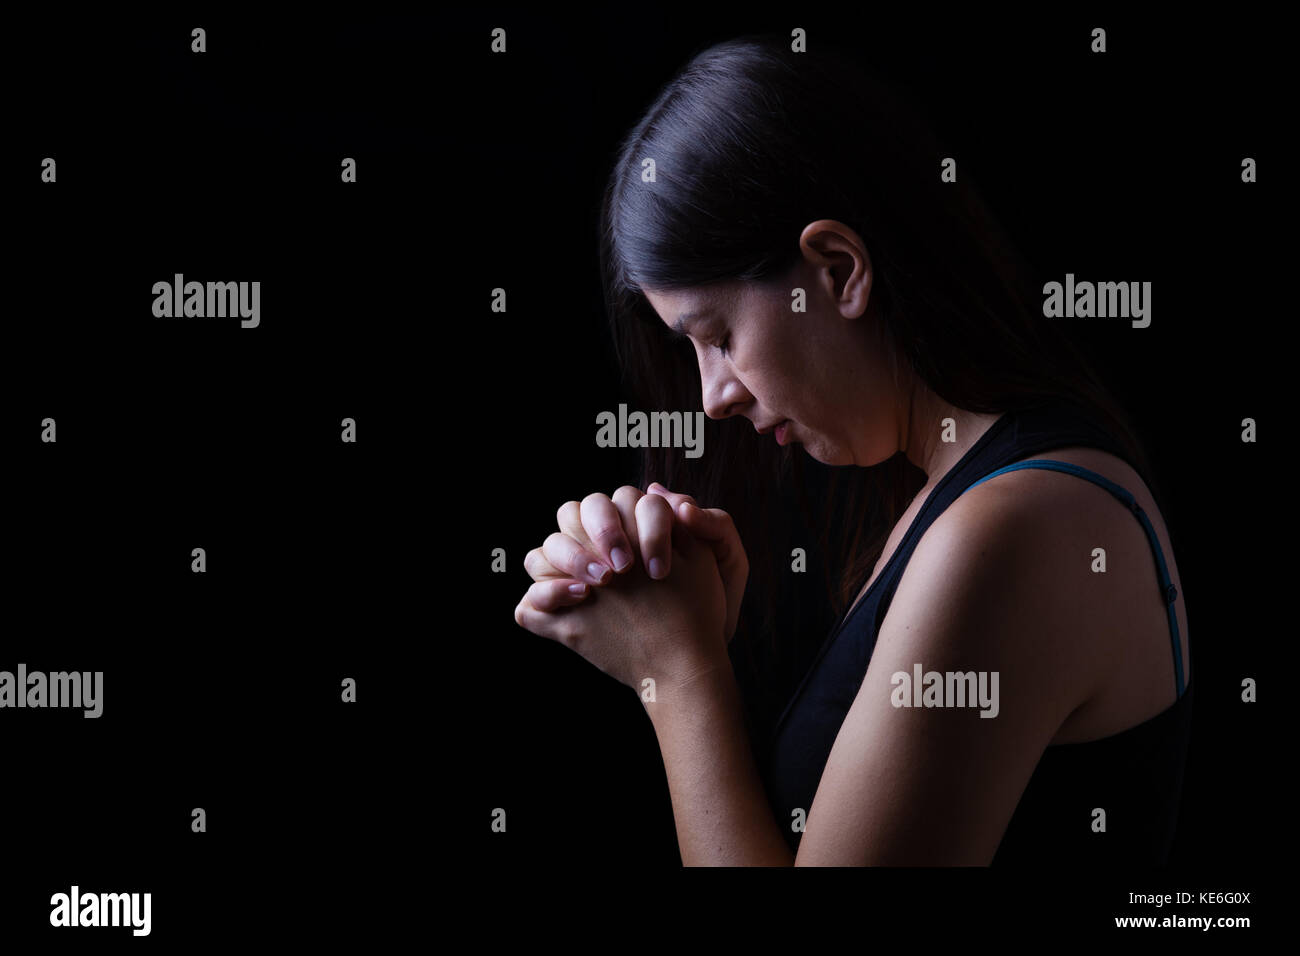 Treue Frau beten, Hände in der Anbetung zu Gott gefaltet, Kopf nach unten, die Augen geschlossen, in religiöser Inbrunst. schwarzer Hintergrund Gebet geschlossenen Augen die christliche Hoffnung Stockfoto